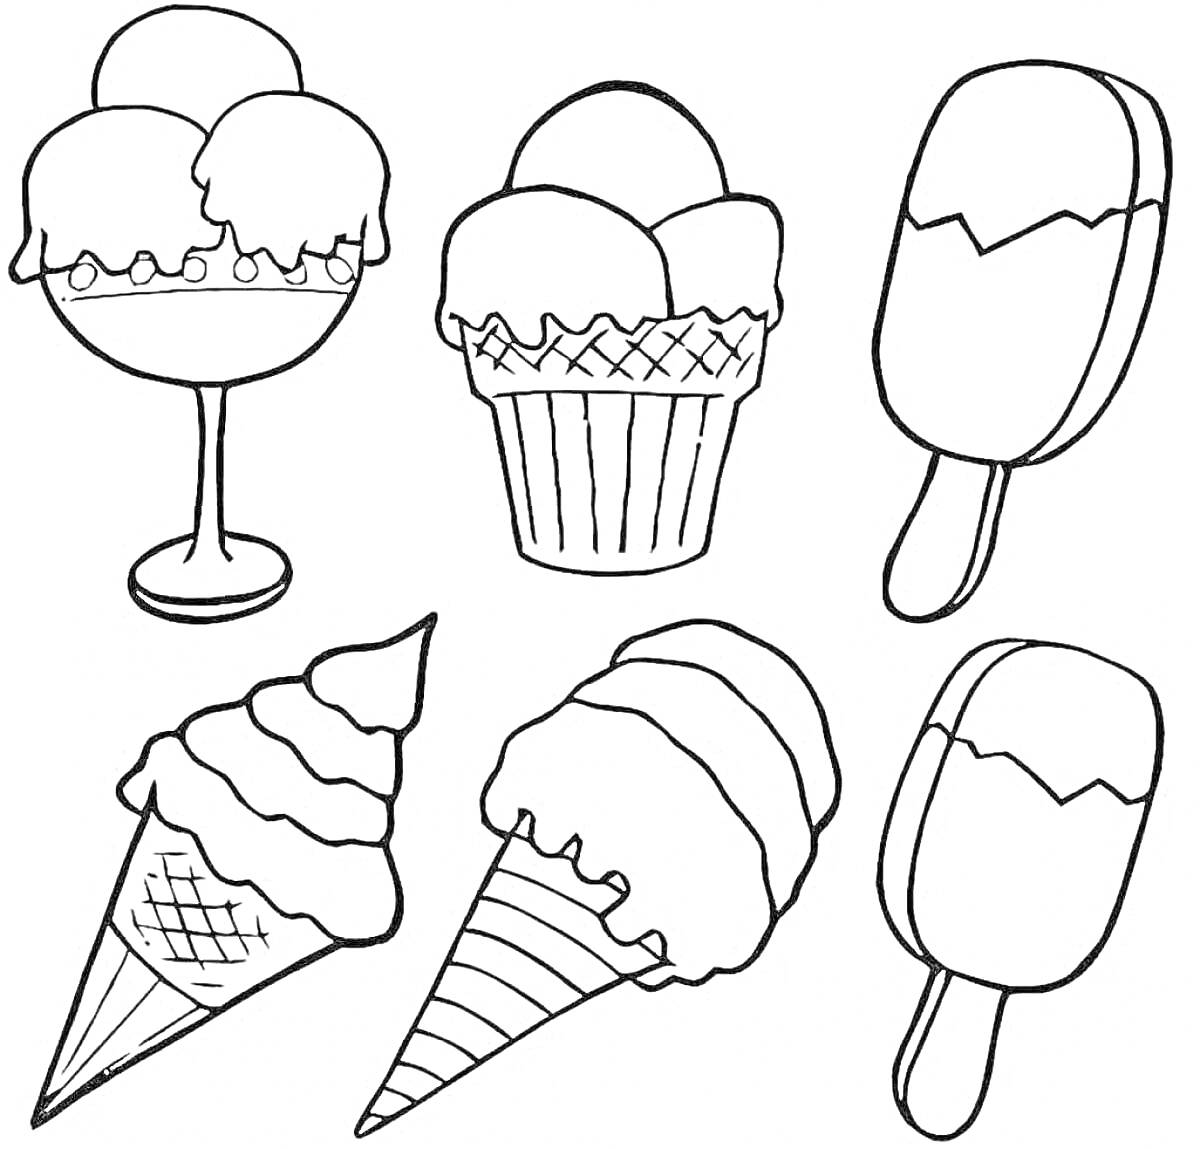 Раскраска Разнообразные виды мороженого: мороженое в креманке, мороженое в бумажном стаканчике, эскимо на палочке, вафельный рожок с мороженым, еще один вафельный рожок с мороженым, еще одно эскимо на палочке